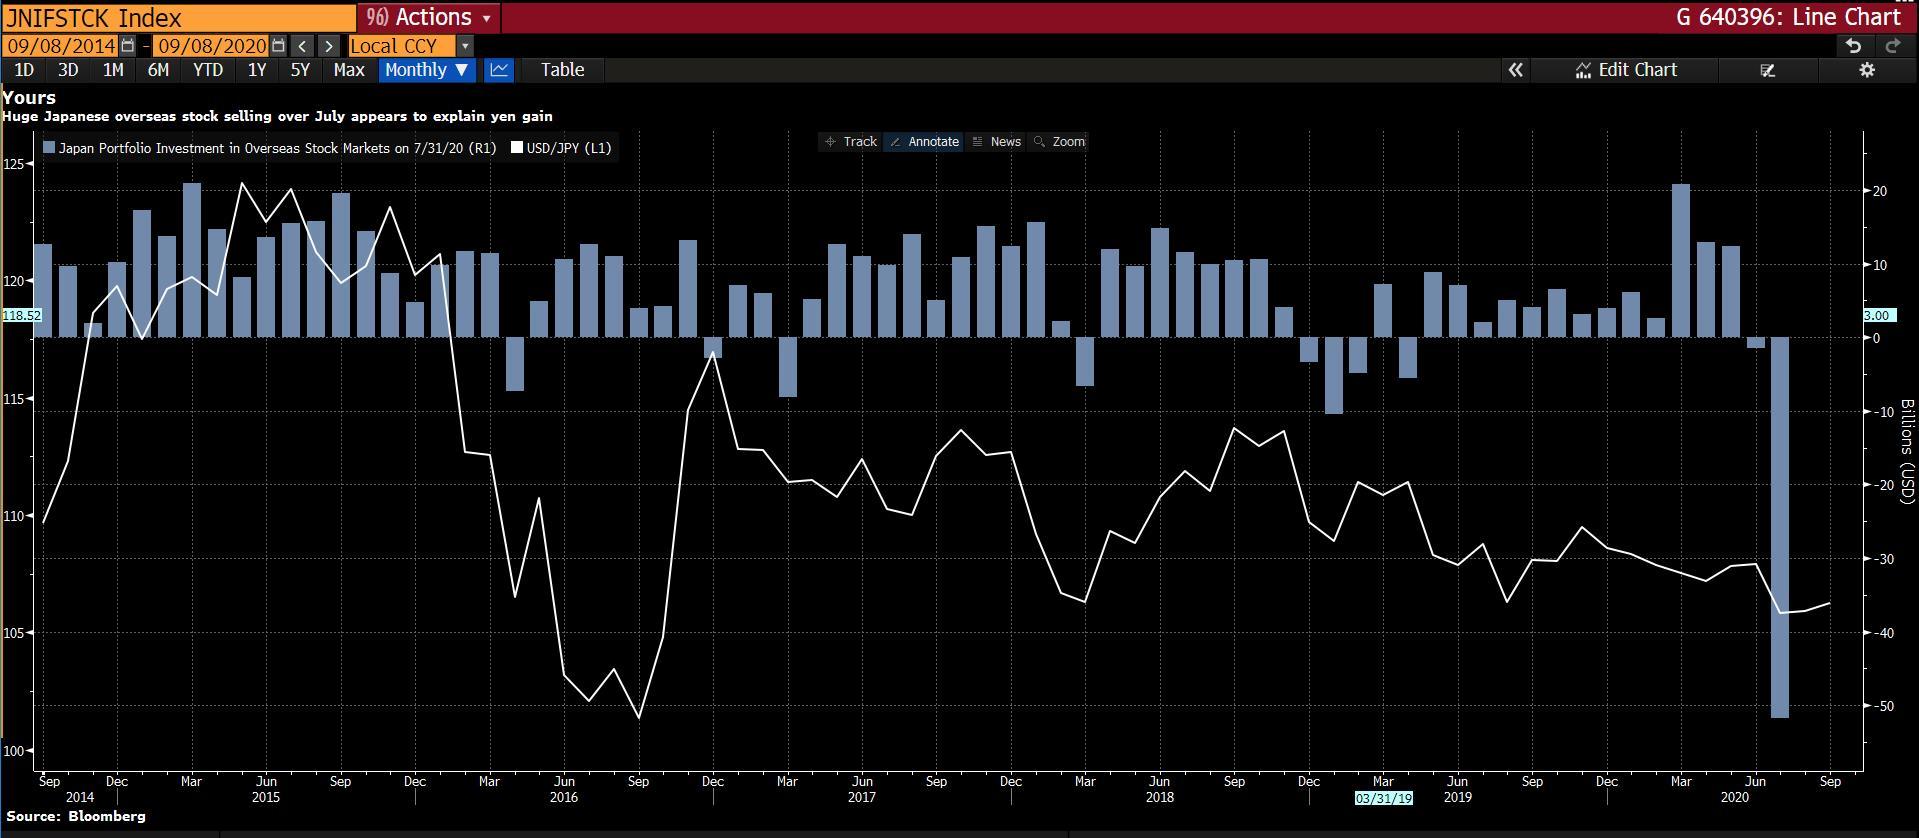 Nhật Bản bán ra lượng cổ phiếu nước ngoài lớn chưa từng thấy khiến JPY tăng vọt trong tháng 7